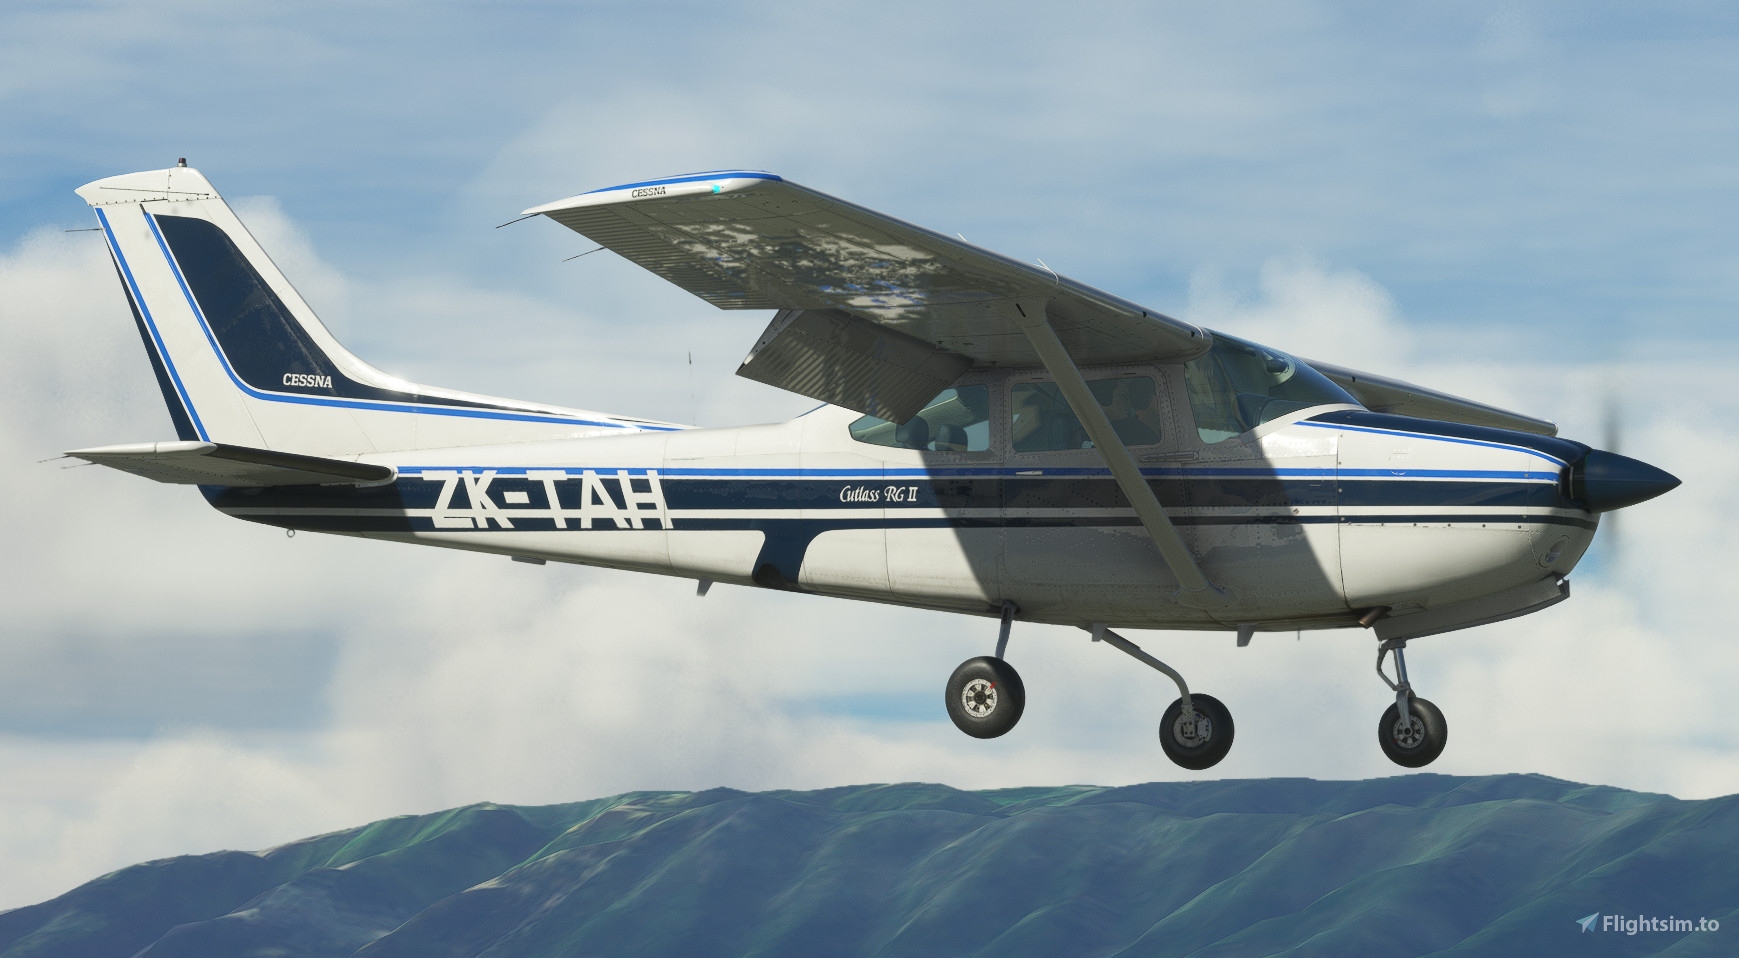 ZK-TAH (New Zealand) | Carenado Cessna C182 RG II [4K] for 